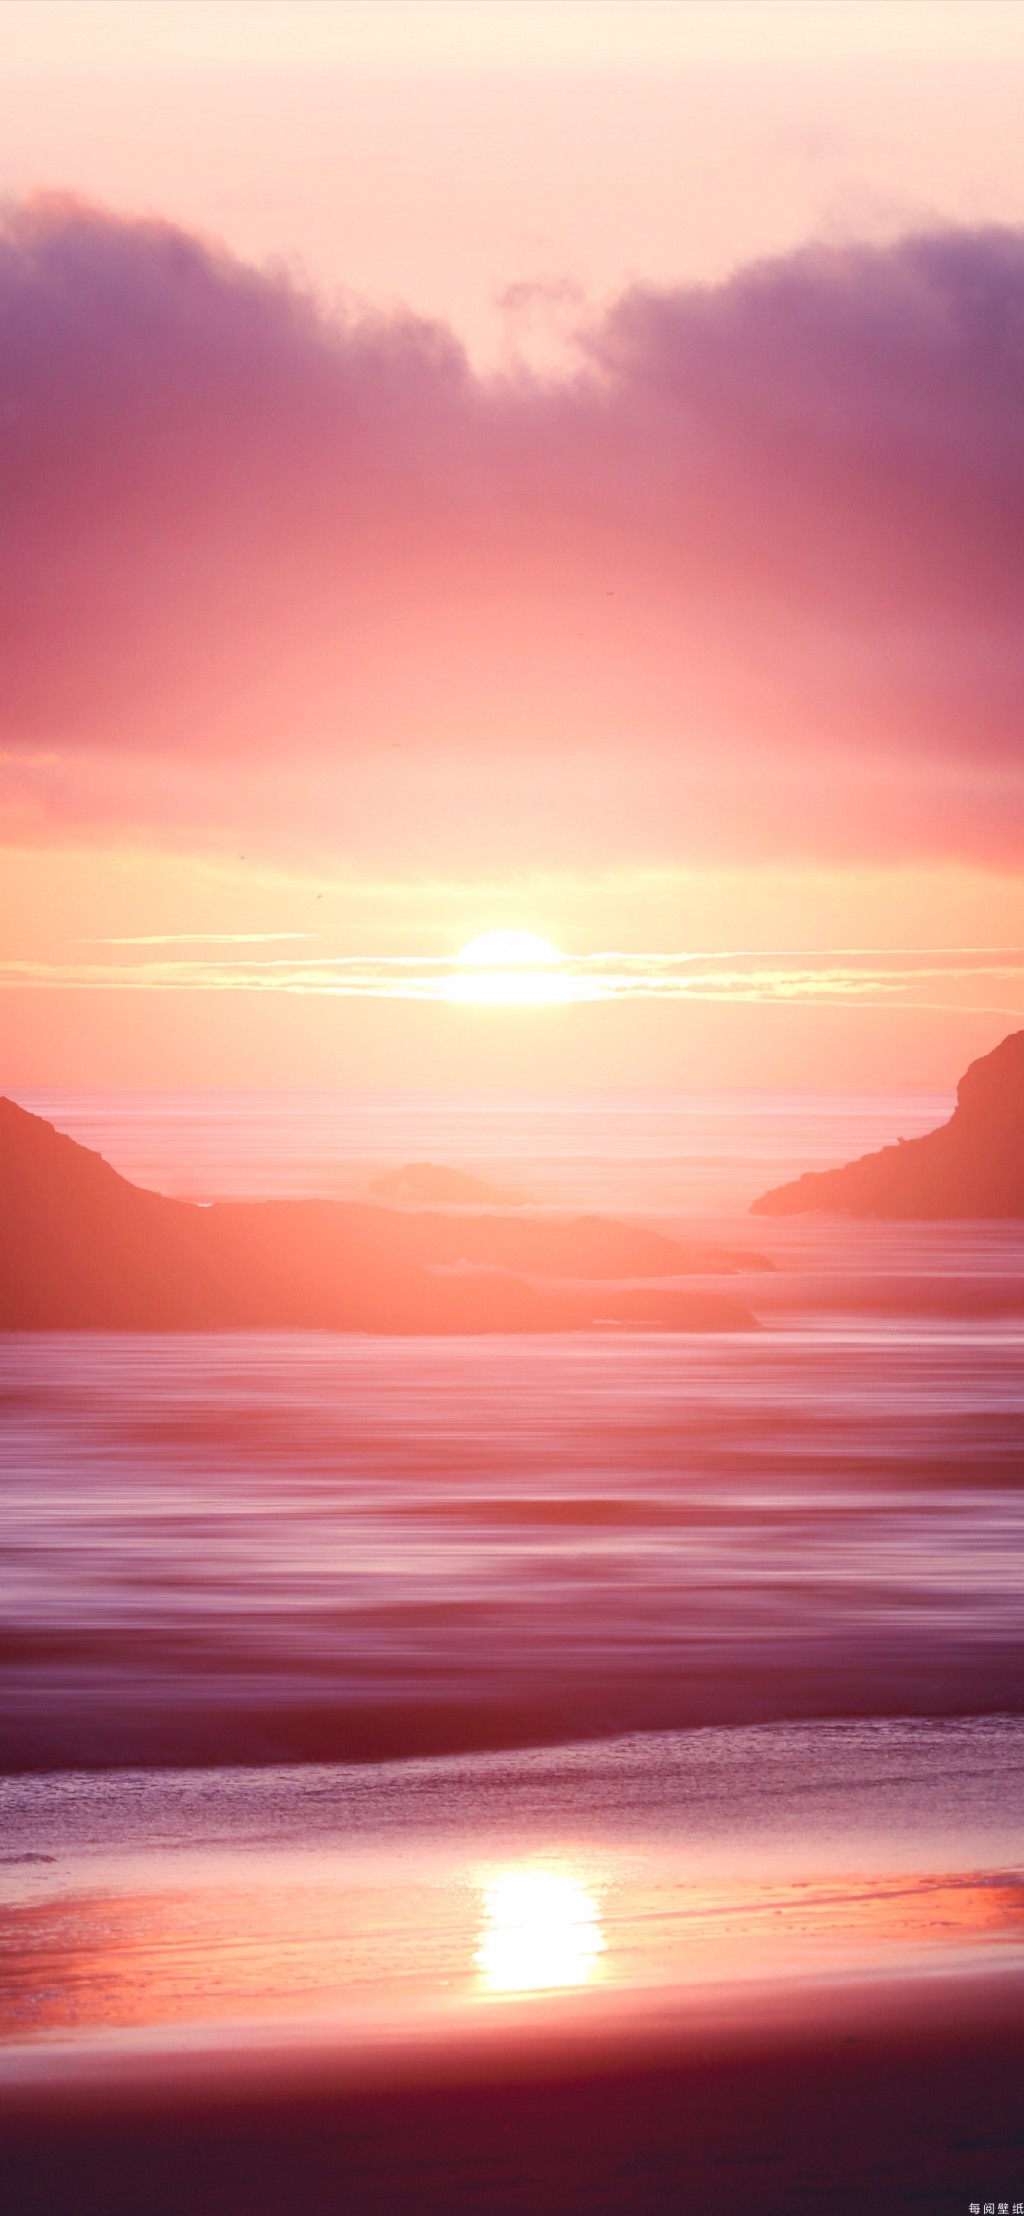 日落时分唯美自然风景手机壁纸